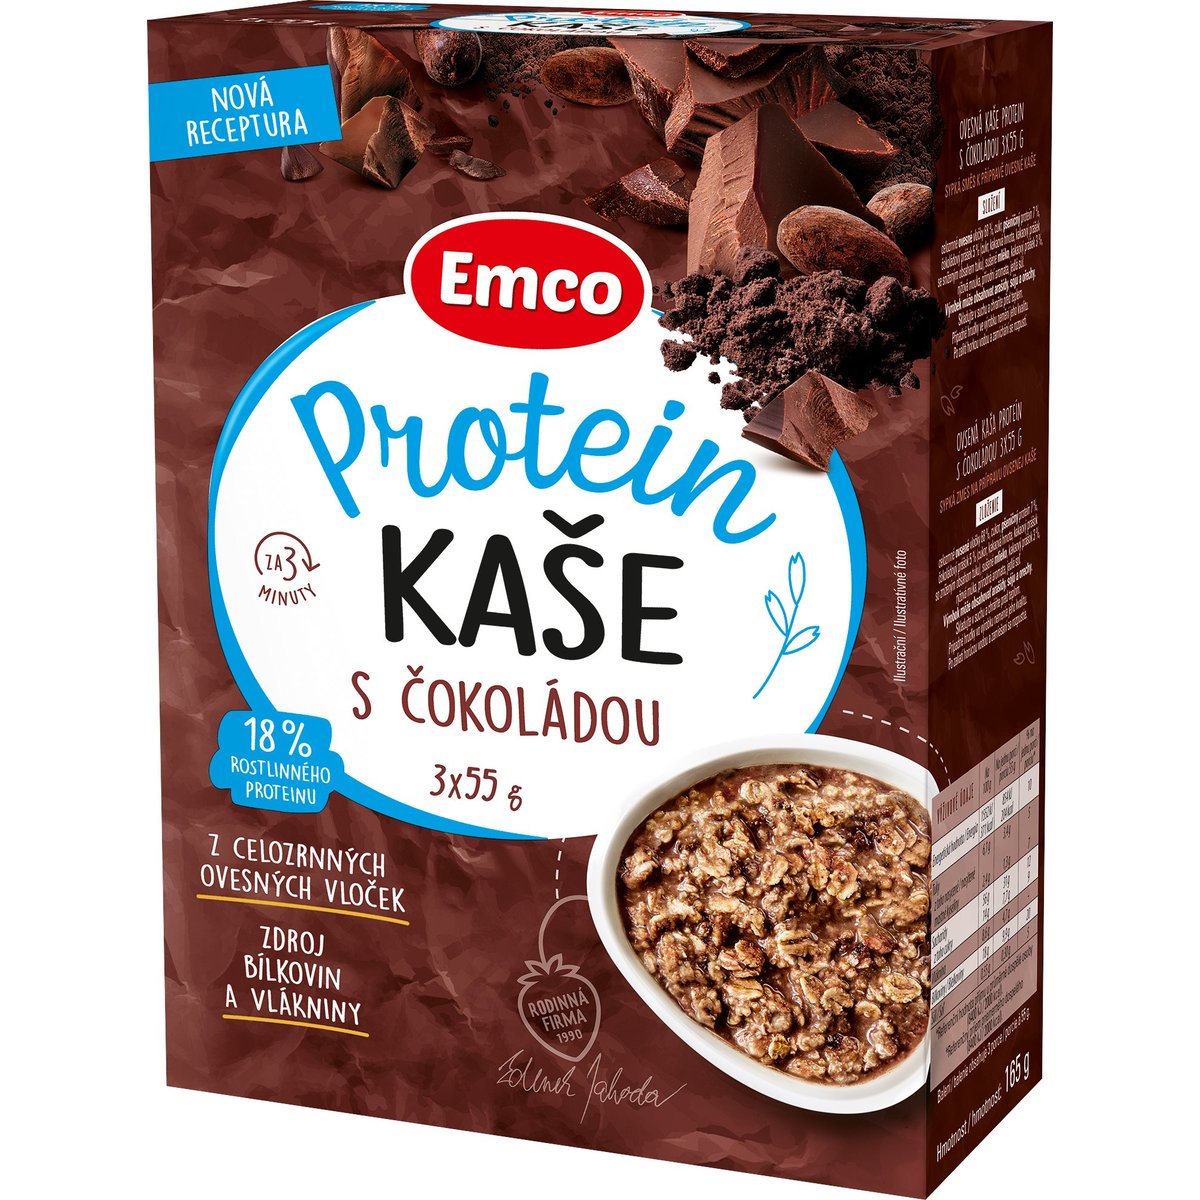 Emco Protein kaše s čokoládou